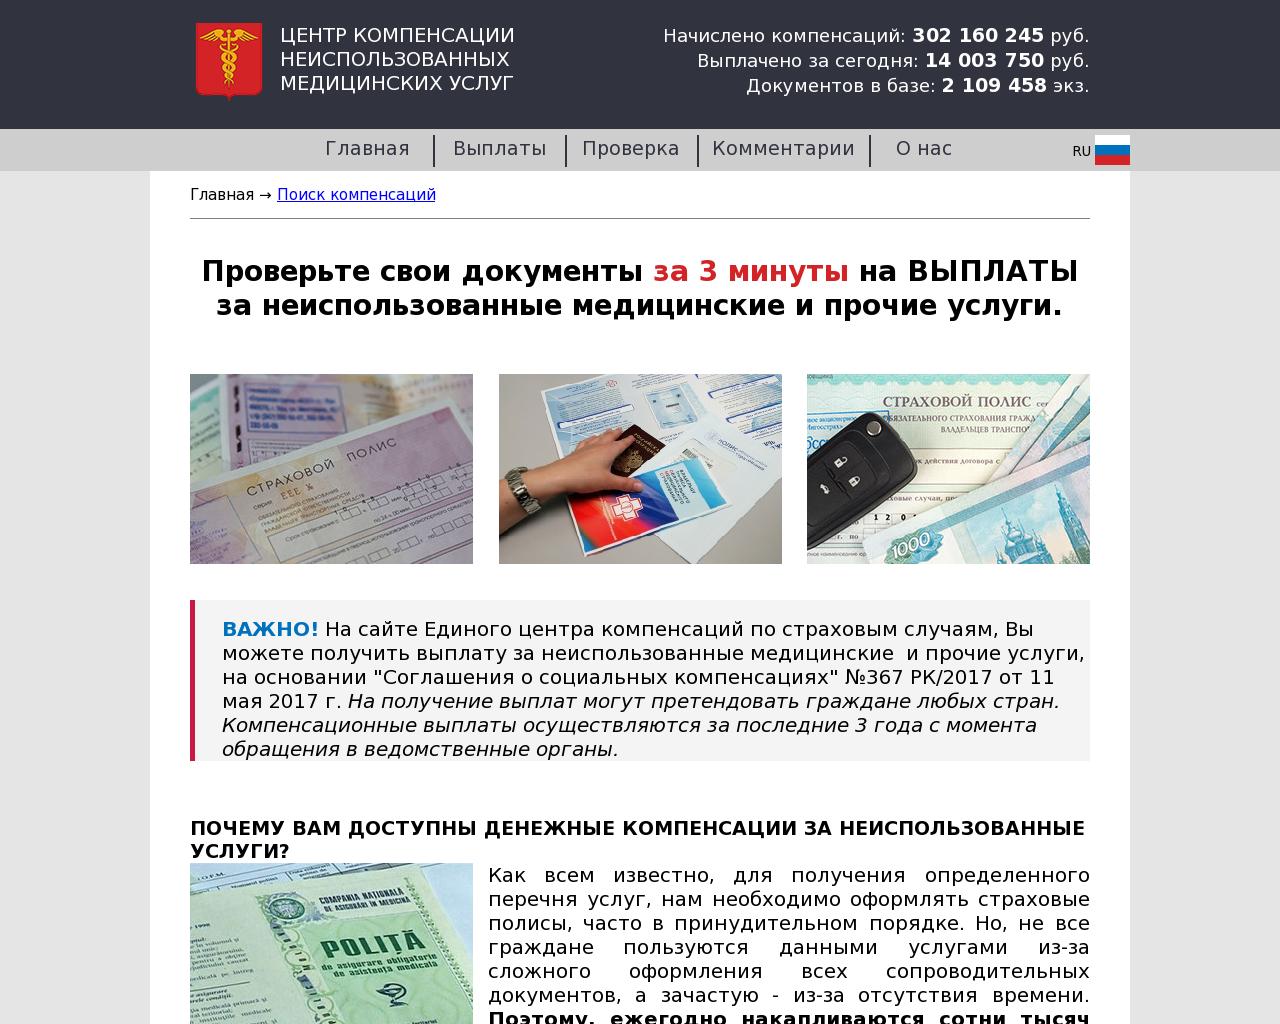 Изображение сайта nasha-medicina.ru в разрешении 1280x1024